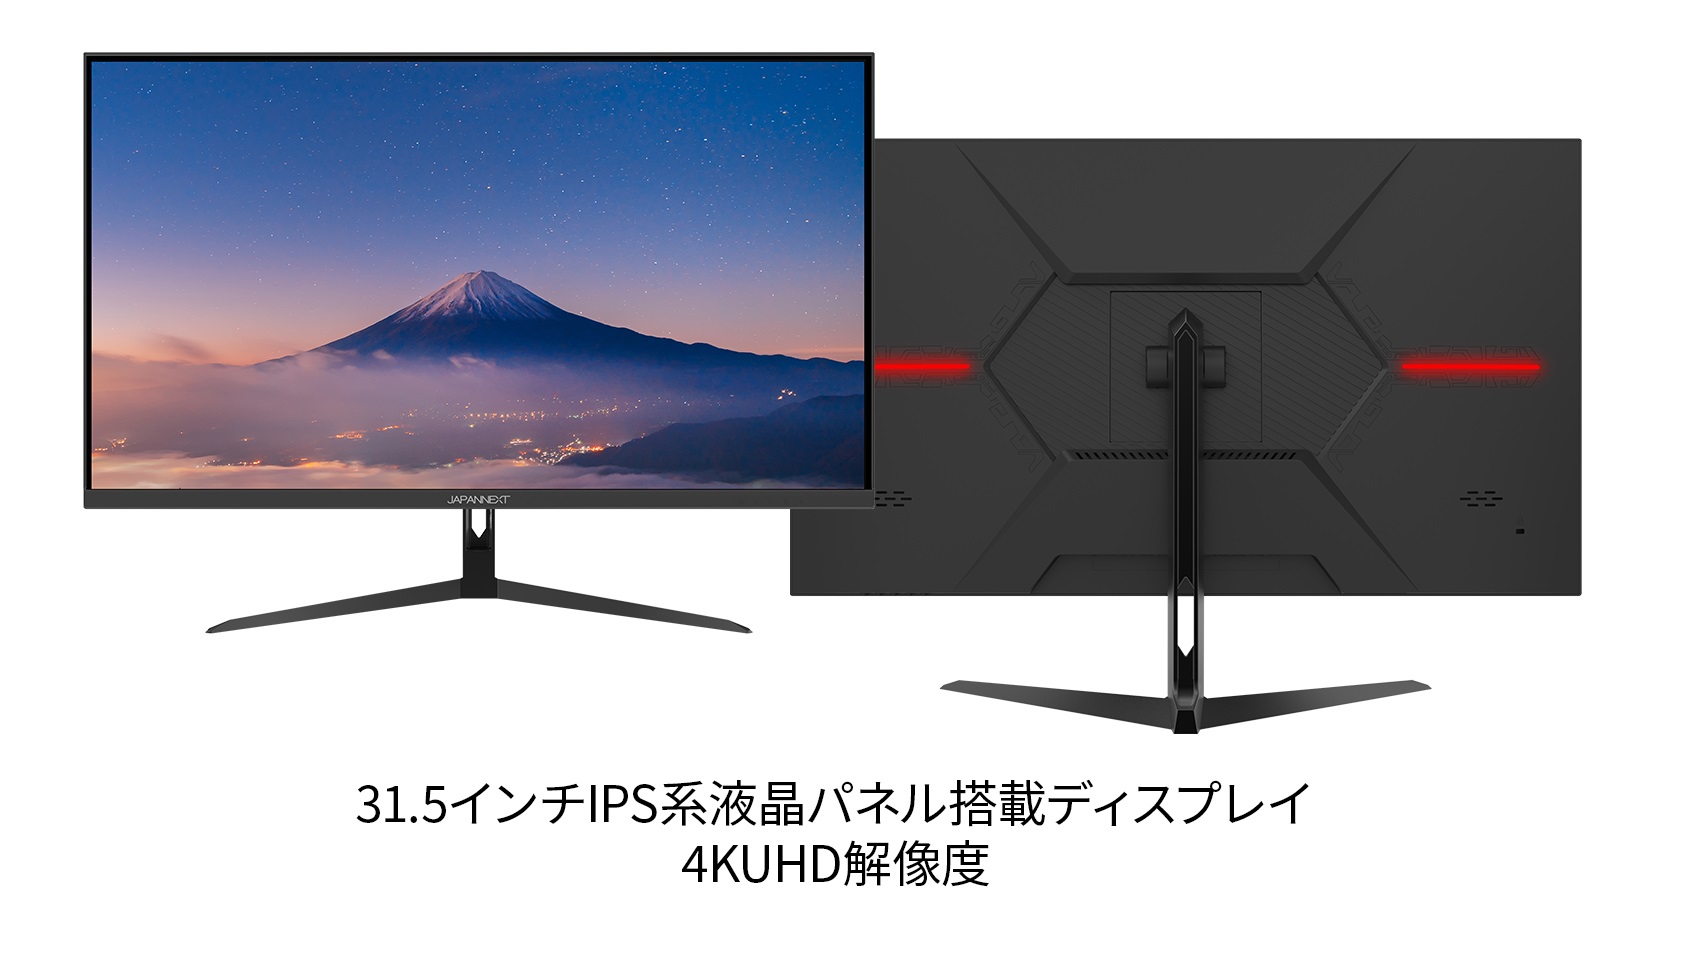 品質検査済 JAPANNEXT 31.5インチIPS系パネル搭載 4K解像度 3840x2160